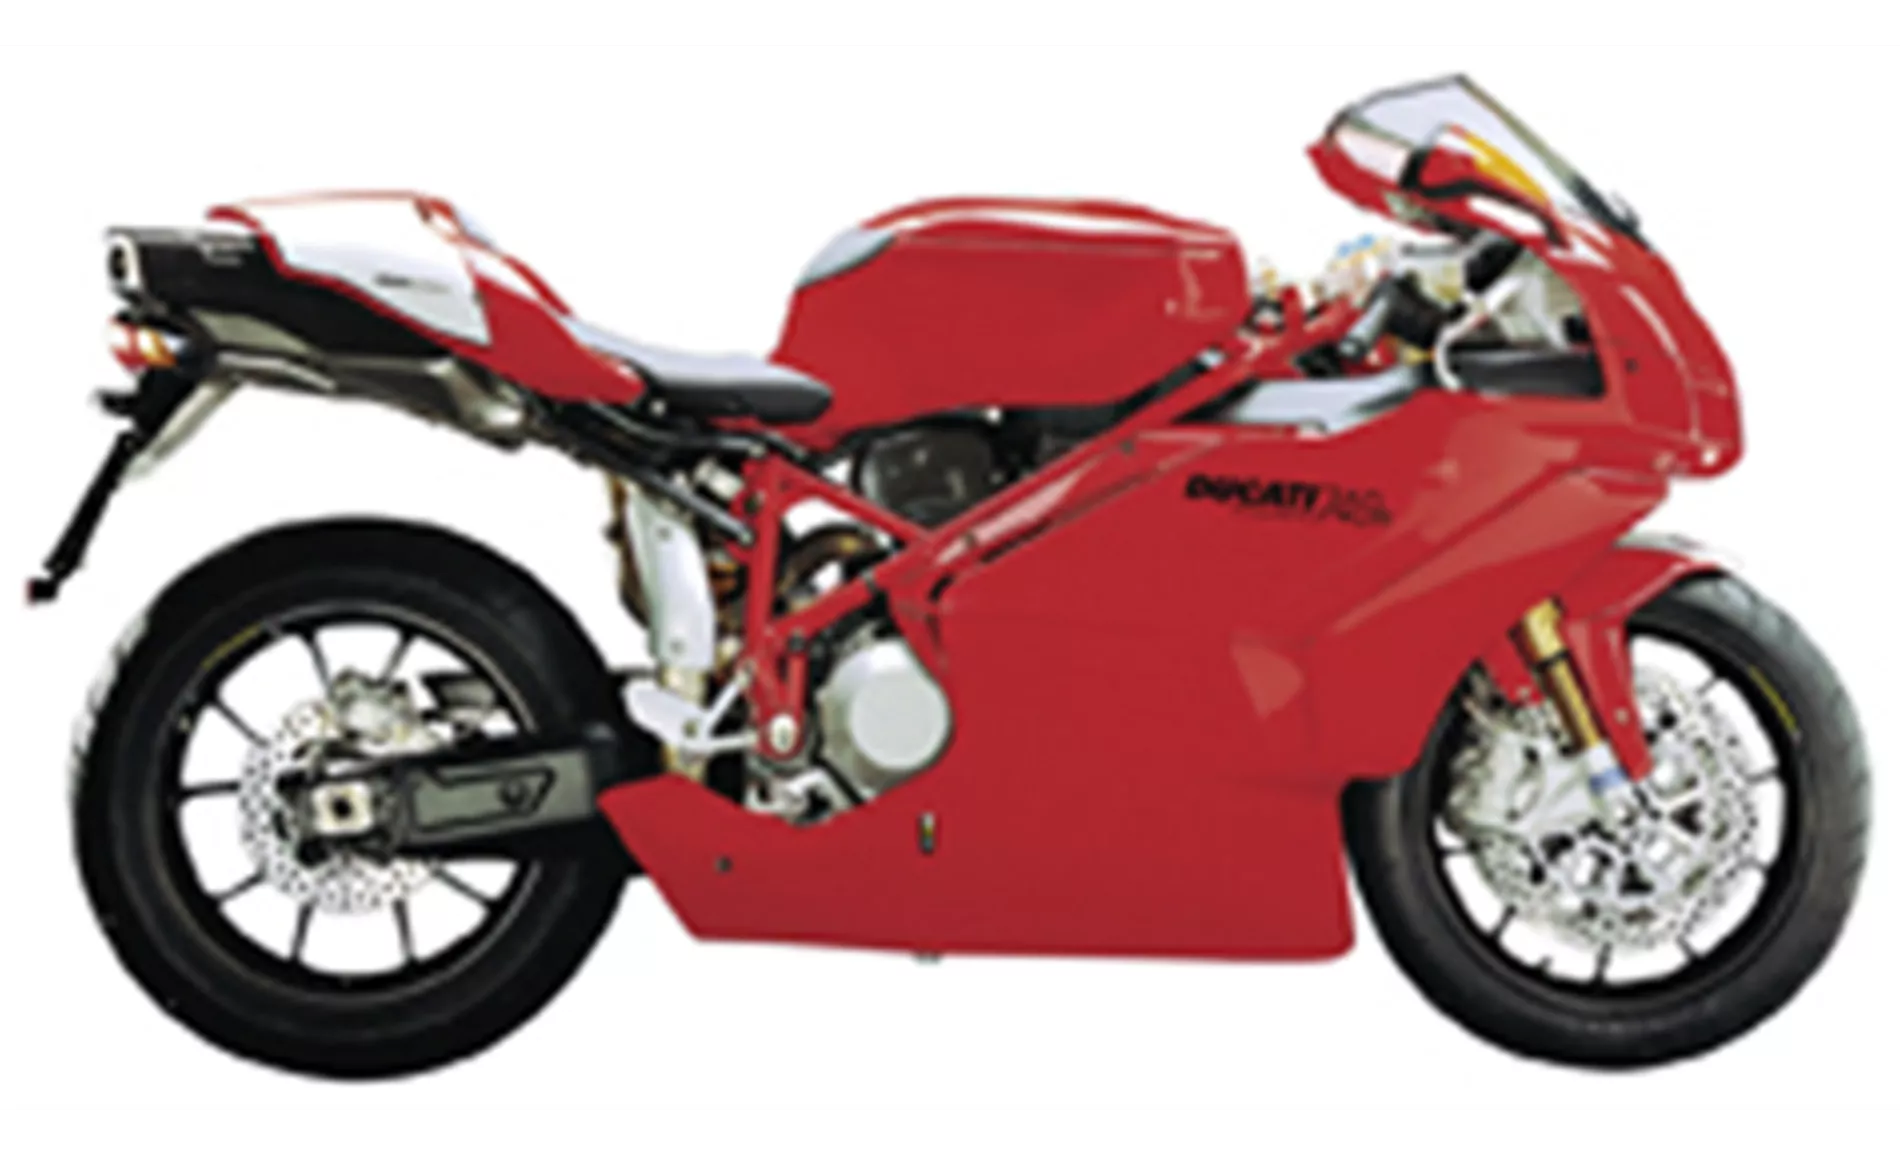 Ducati 749 R 2006